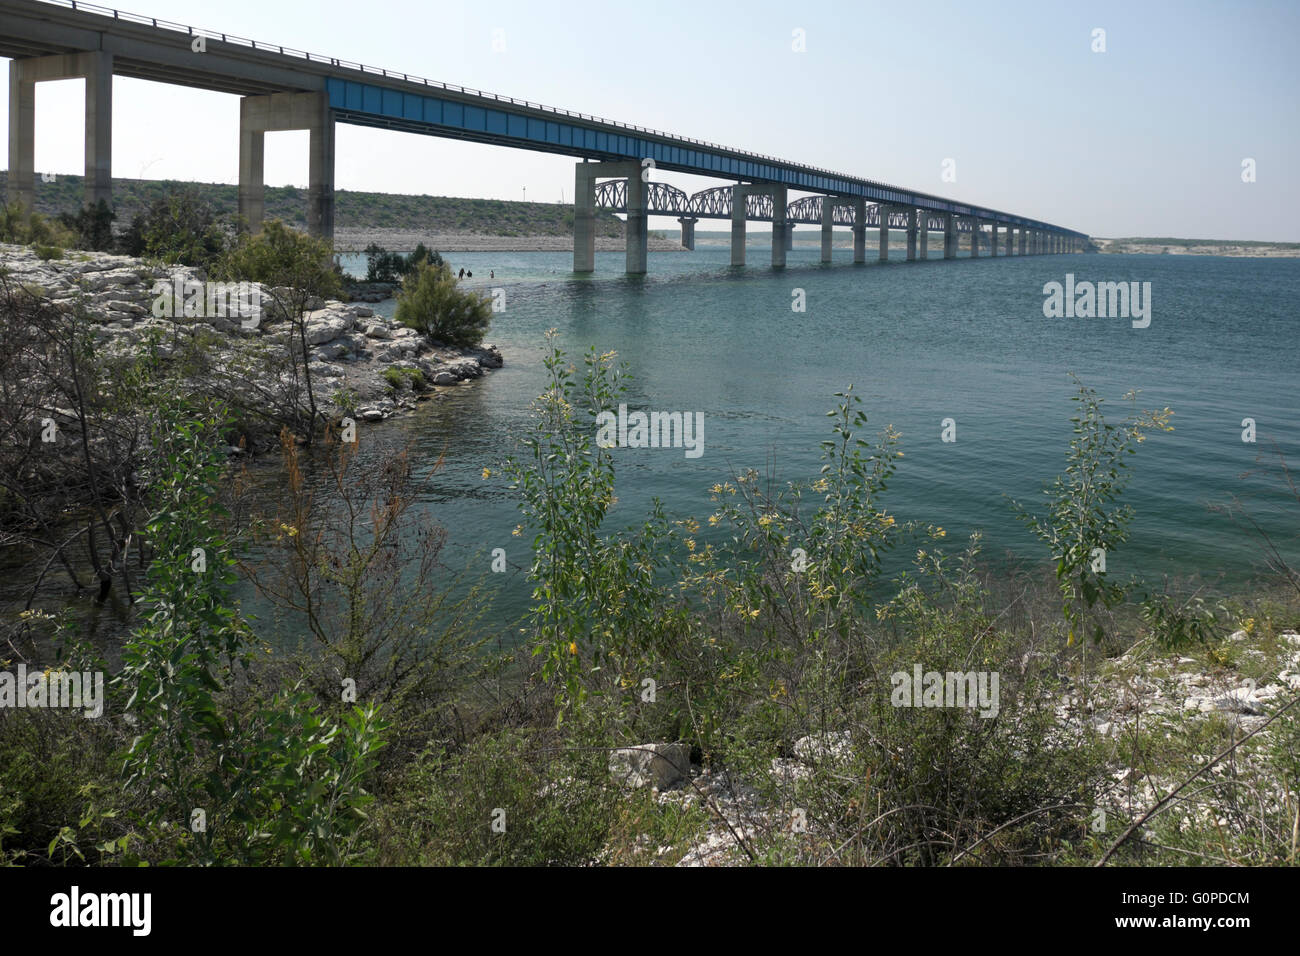 Persone a giocare nelle acque del lago Amistad sotto il ponte del veicolo in corrispondenza del governatore lo sbarco nei pressi del Rio, Texas. Foto Stock